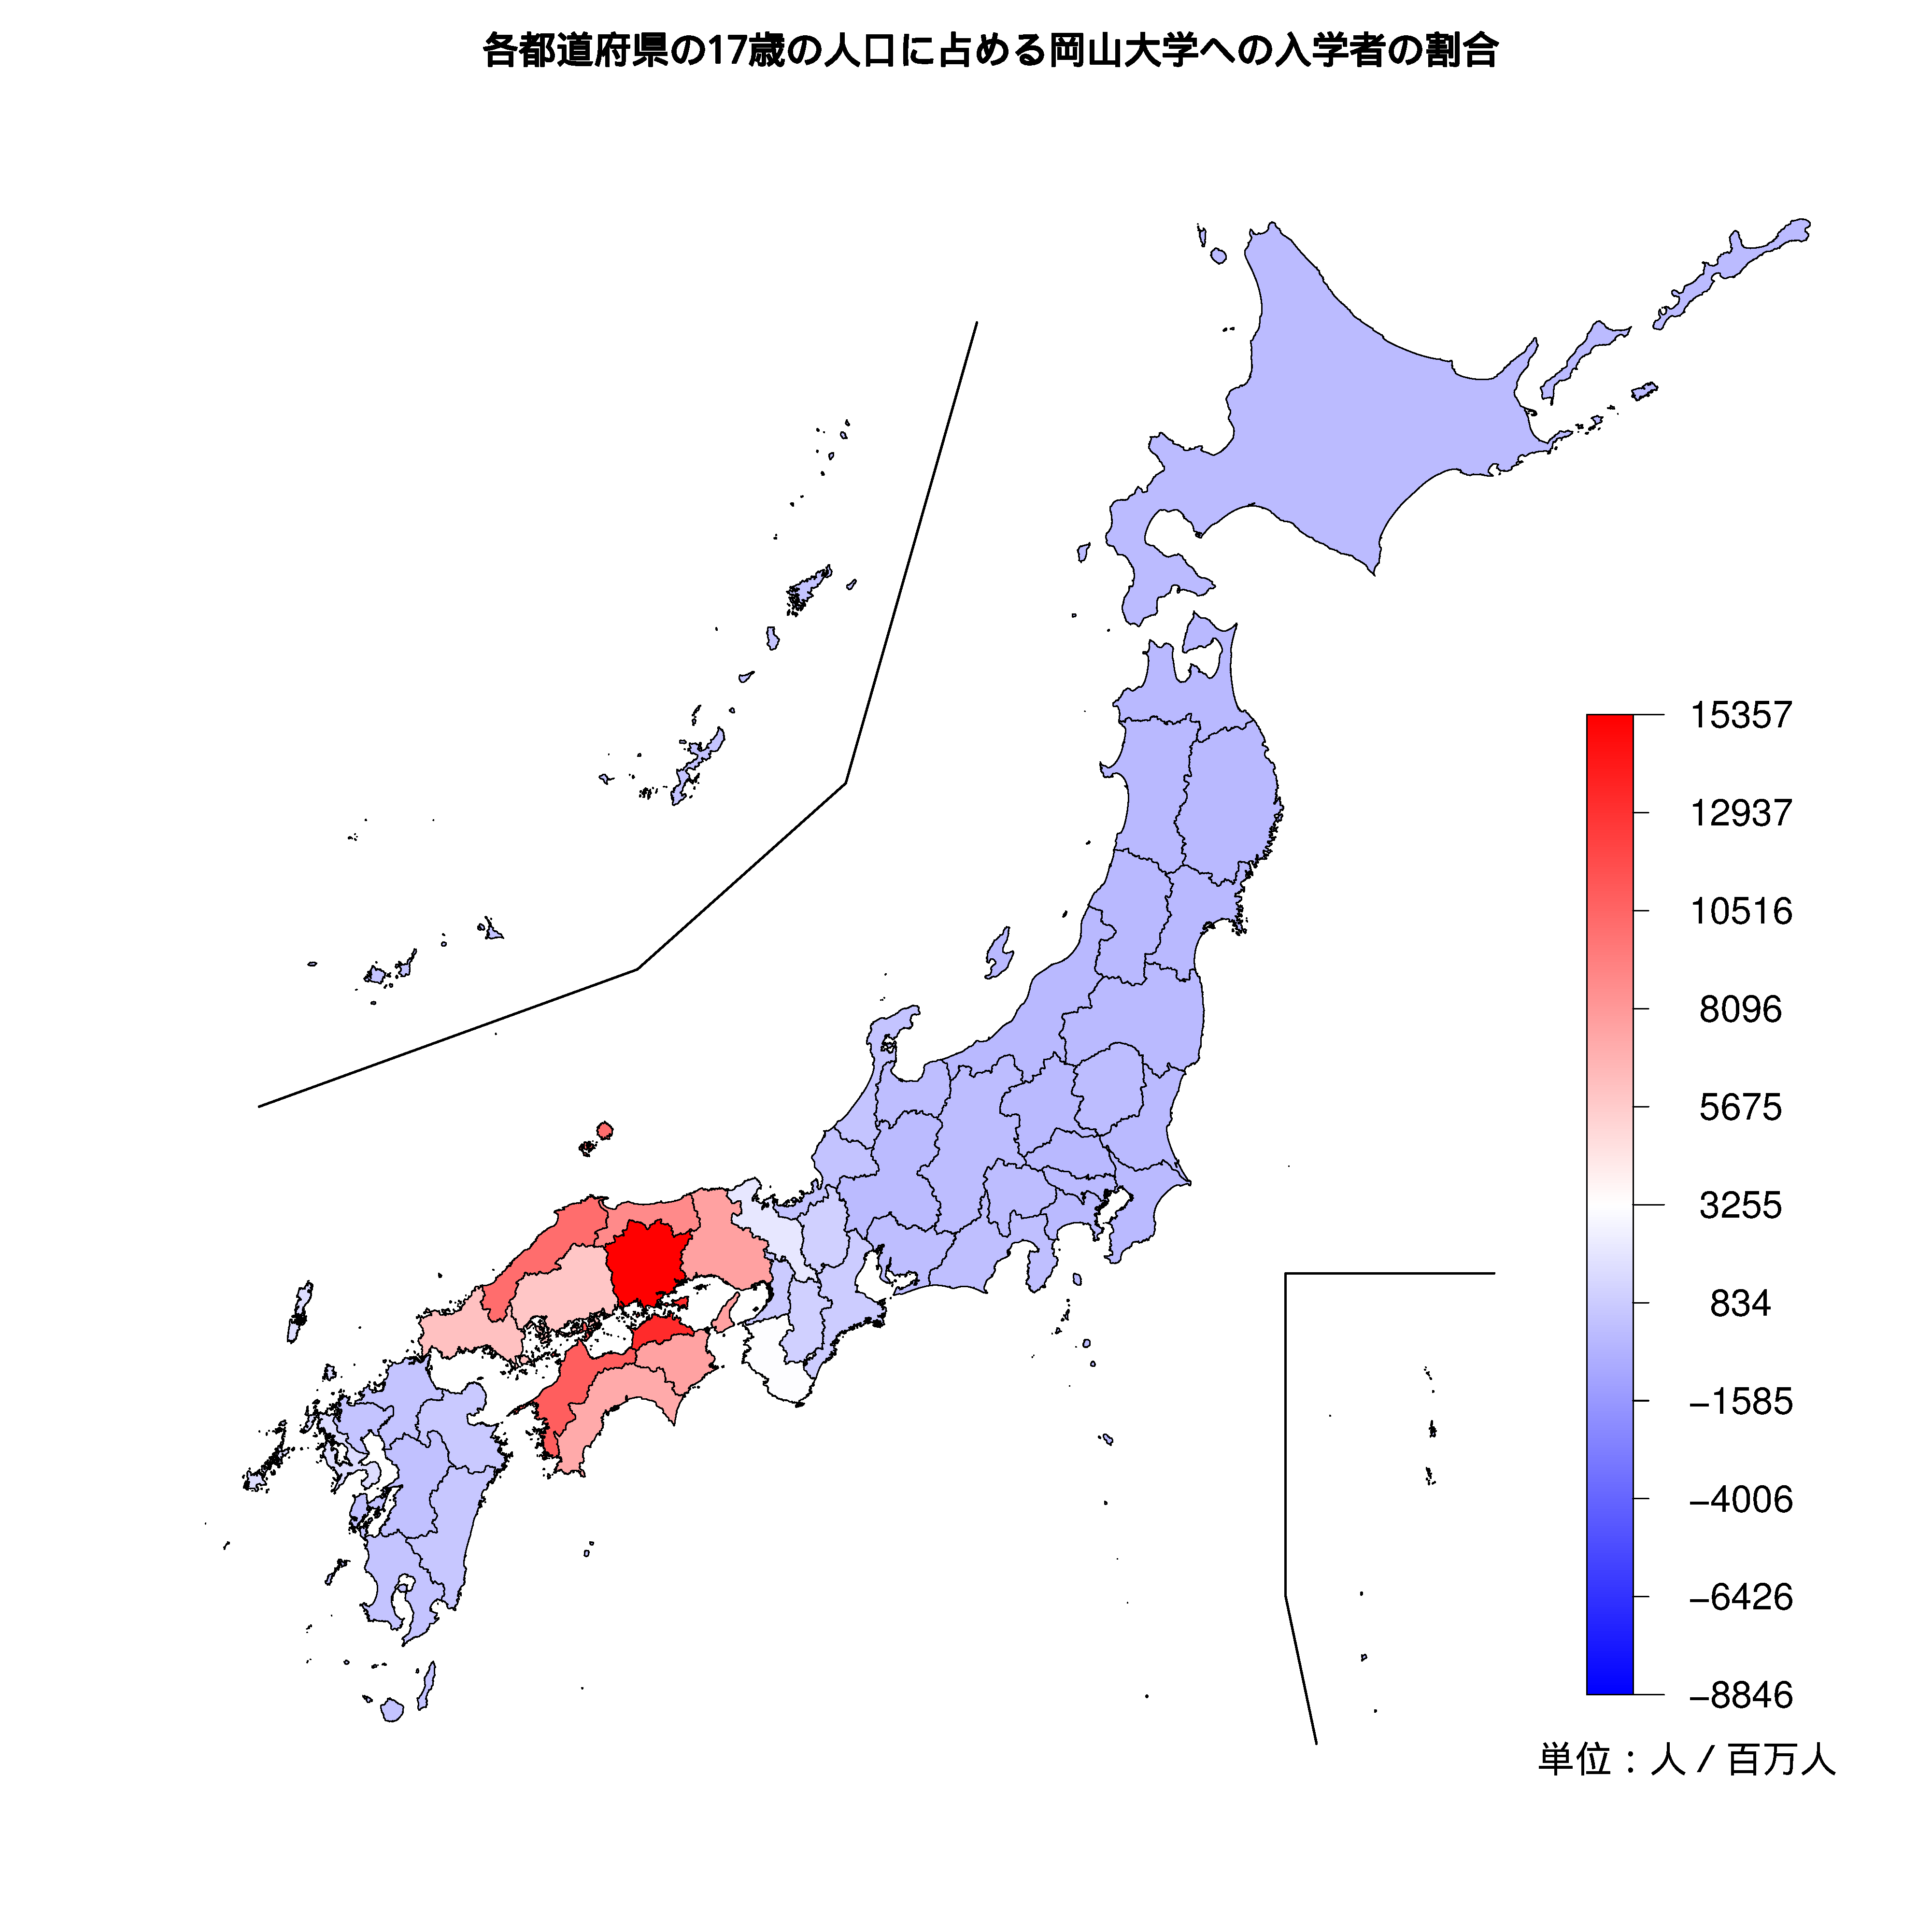 岡山大学への入学者が多い都道府県の色分け地図